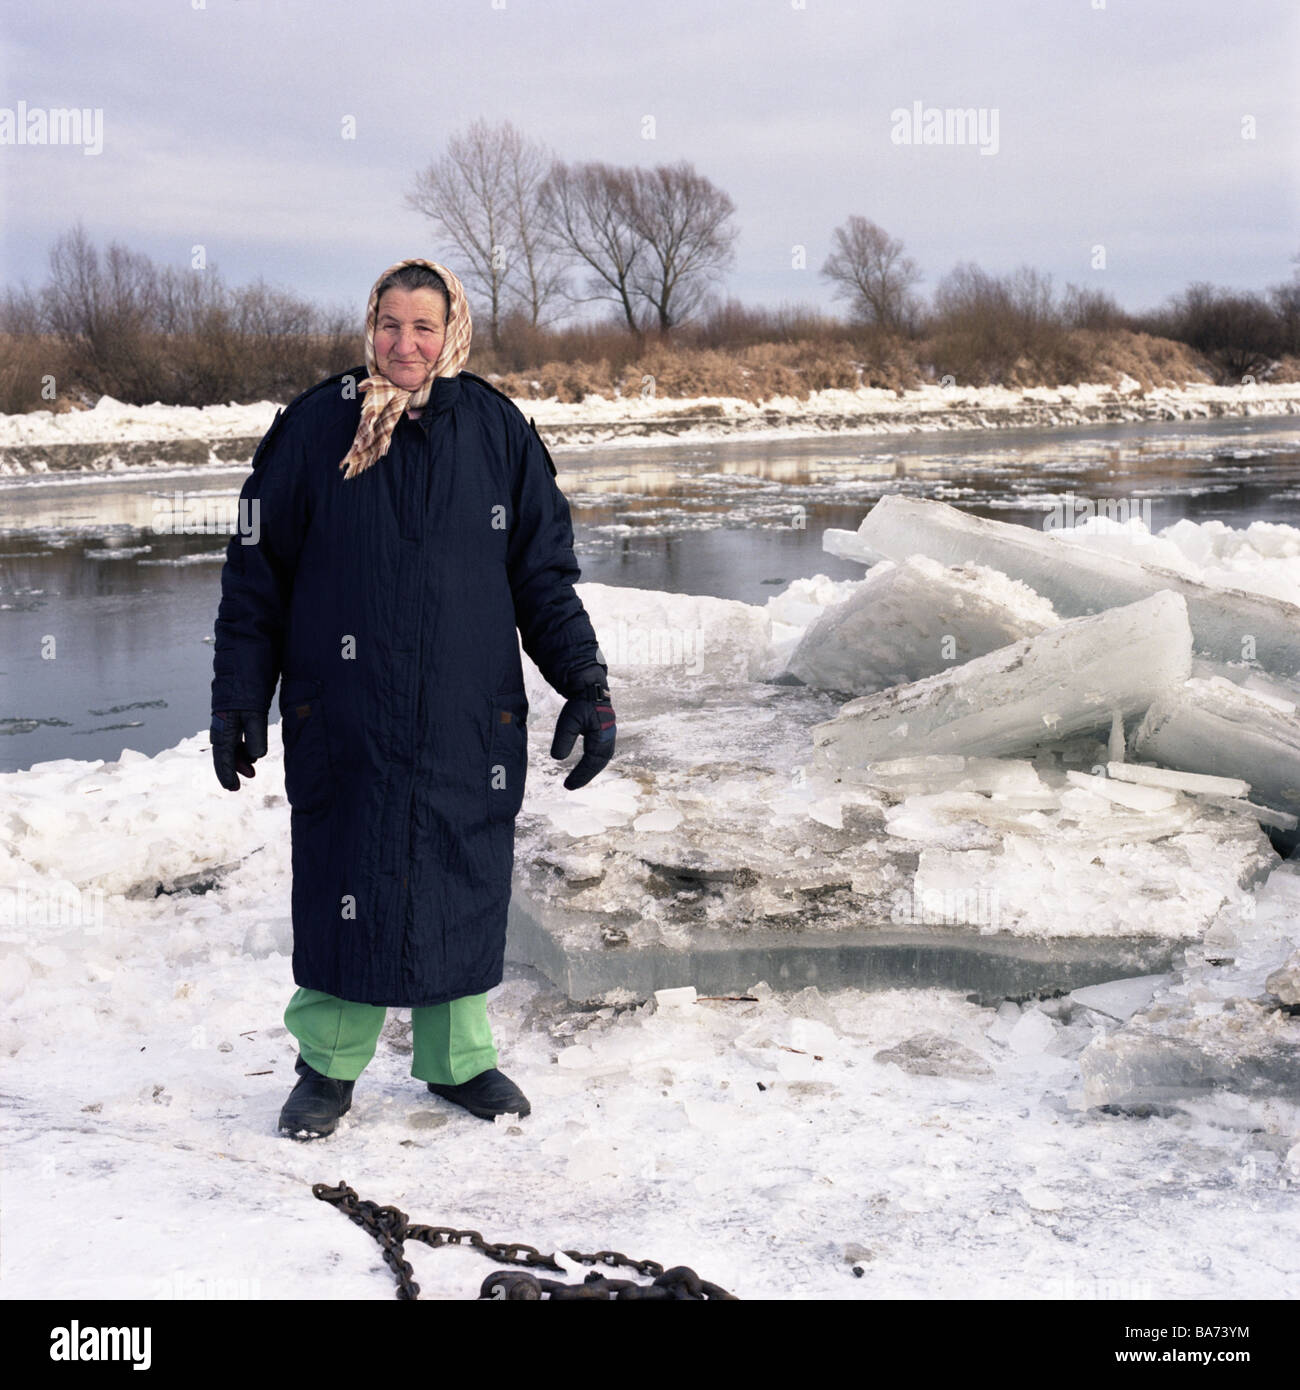 Pologne Tarnow neige hiver capeline femme modèles-clothing aucune presse Pôle Europe les aînés de 70 ans hivers saison river Banque D'Images